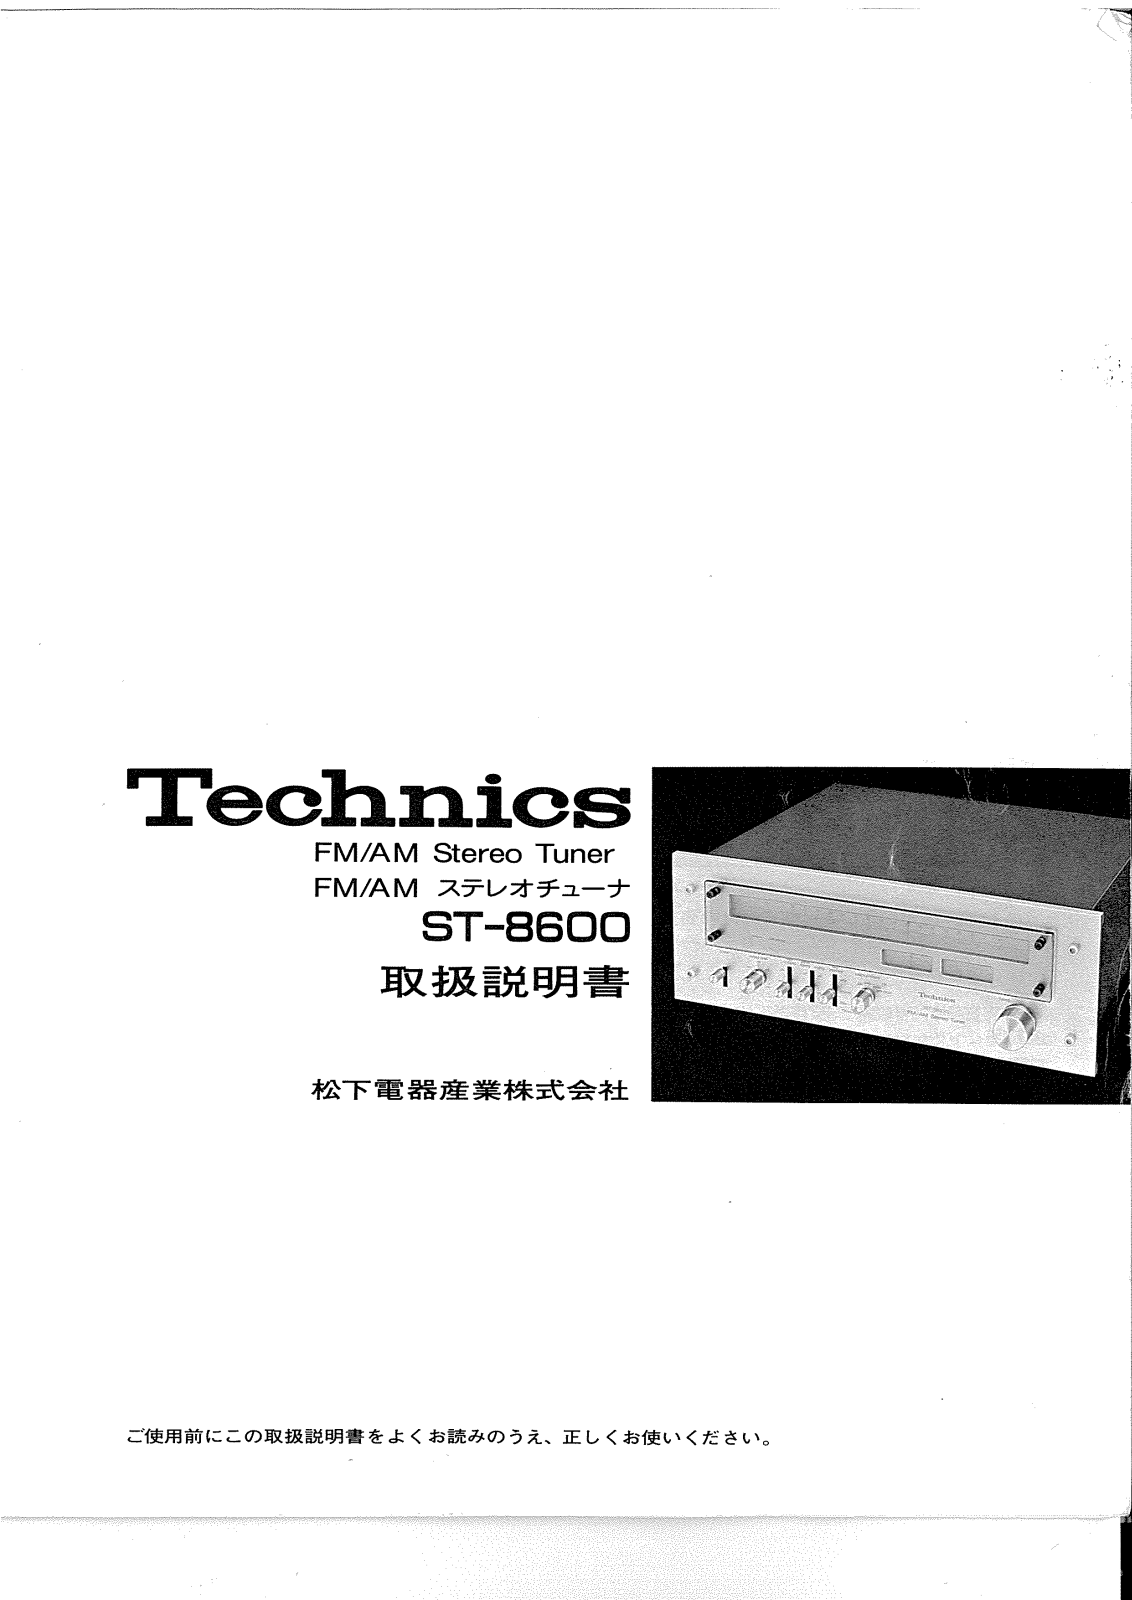 Technics ST-8600 Owners Manual